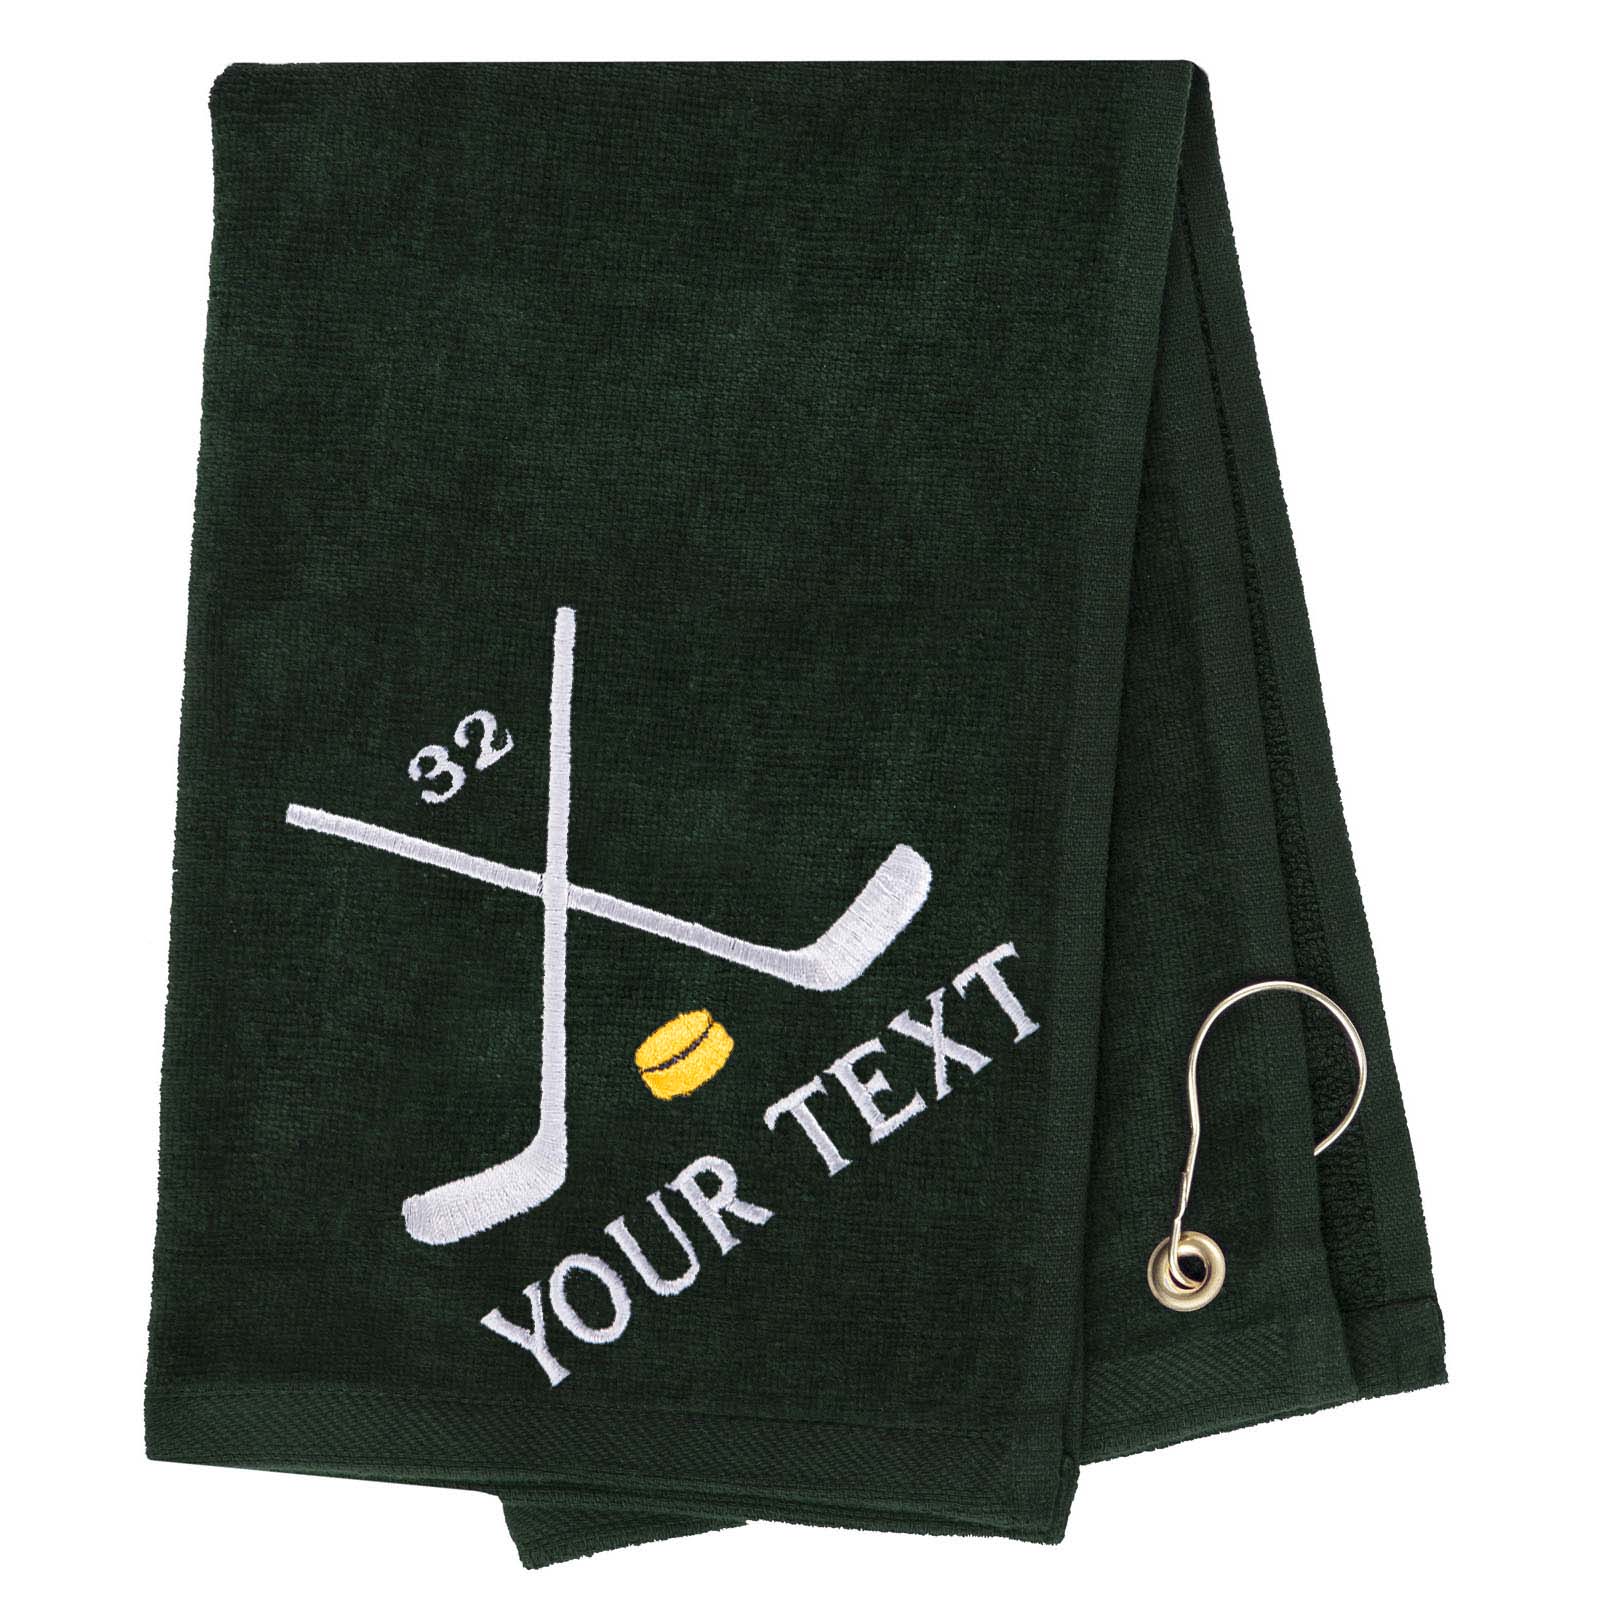 Mato & Hash Hockey Towels Embroidery - Mato & Hash